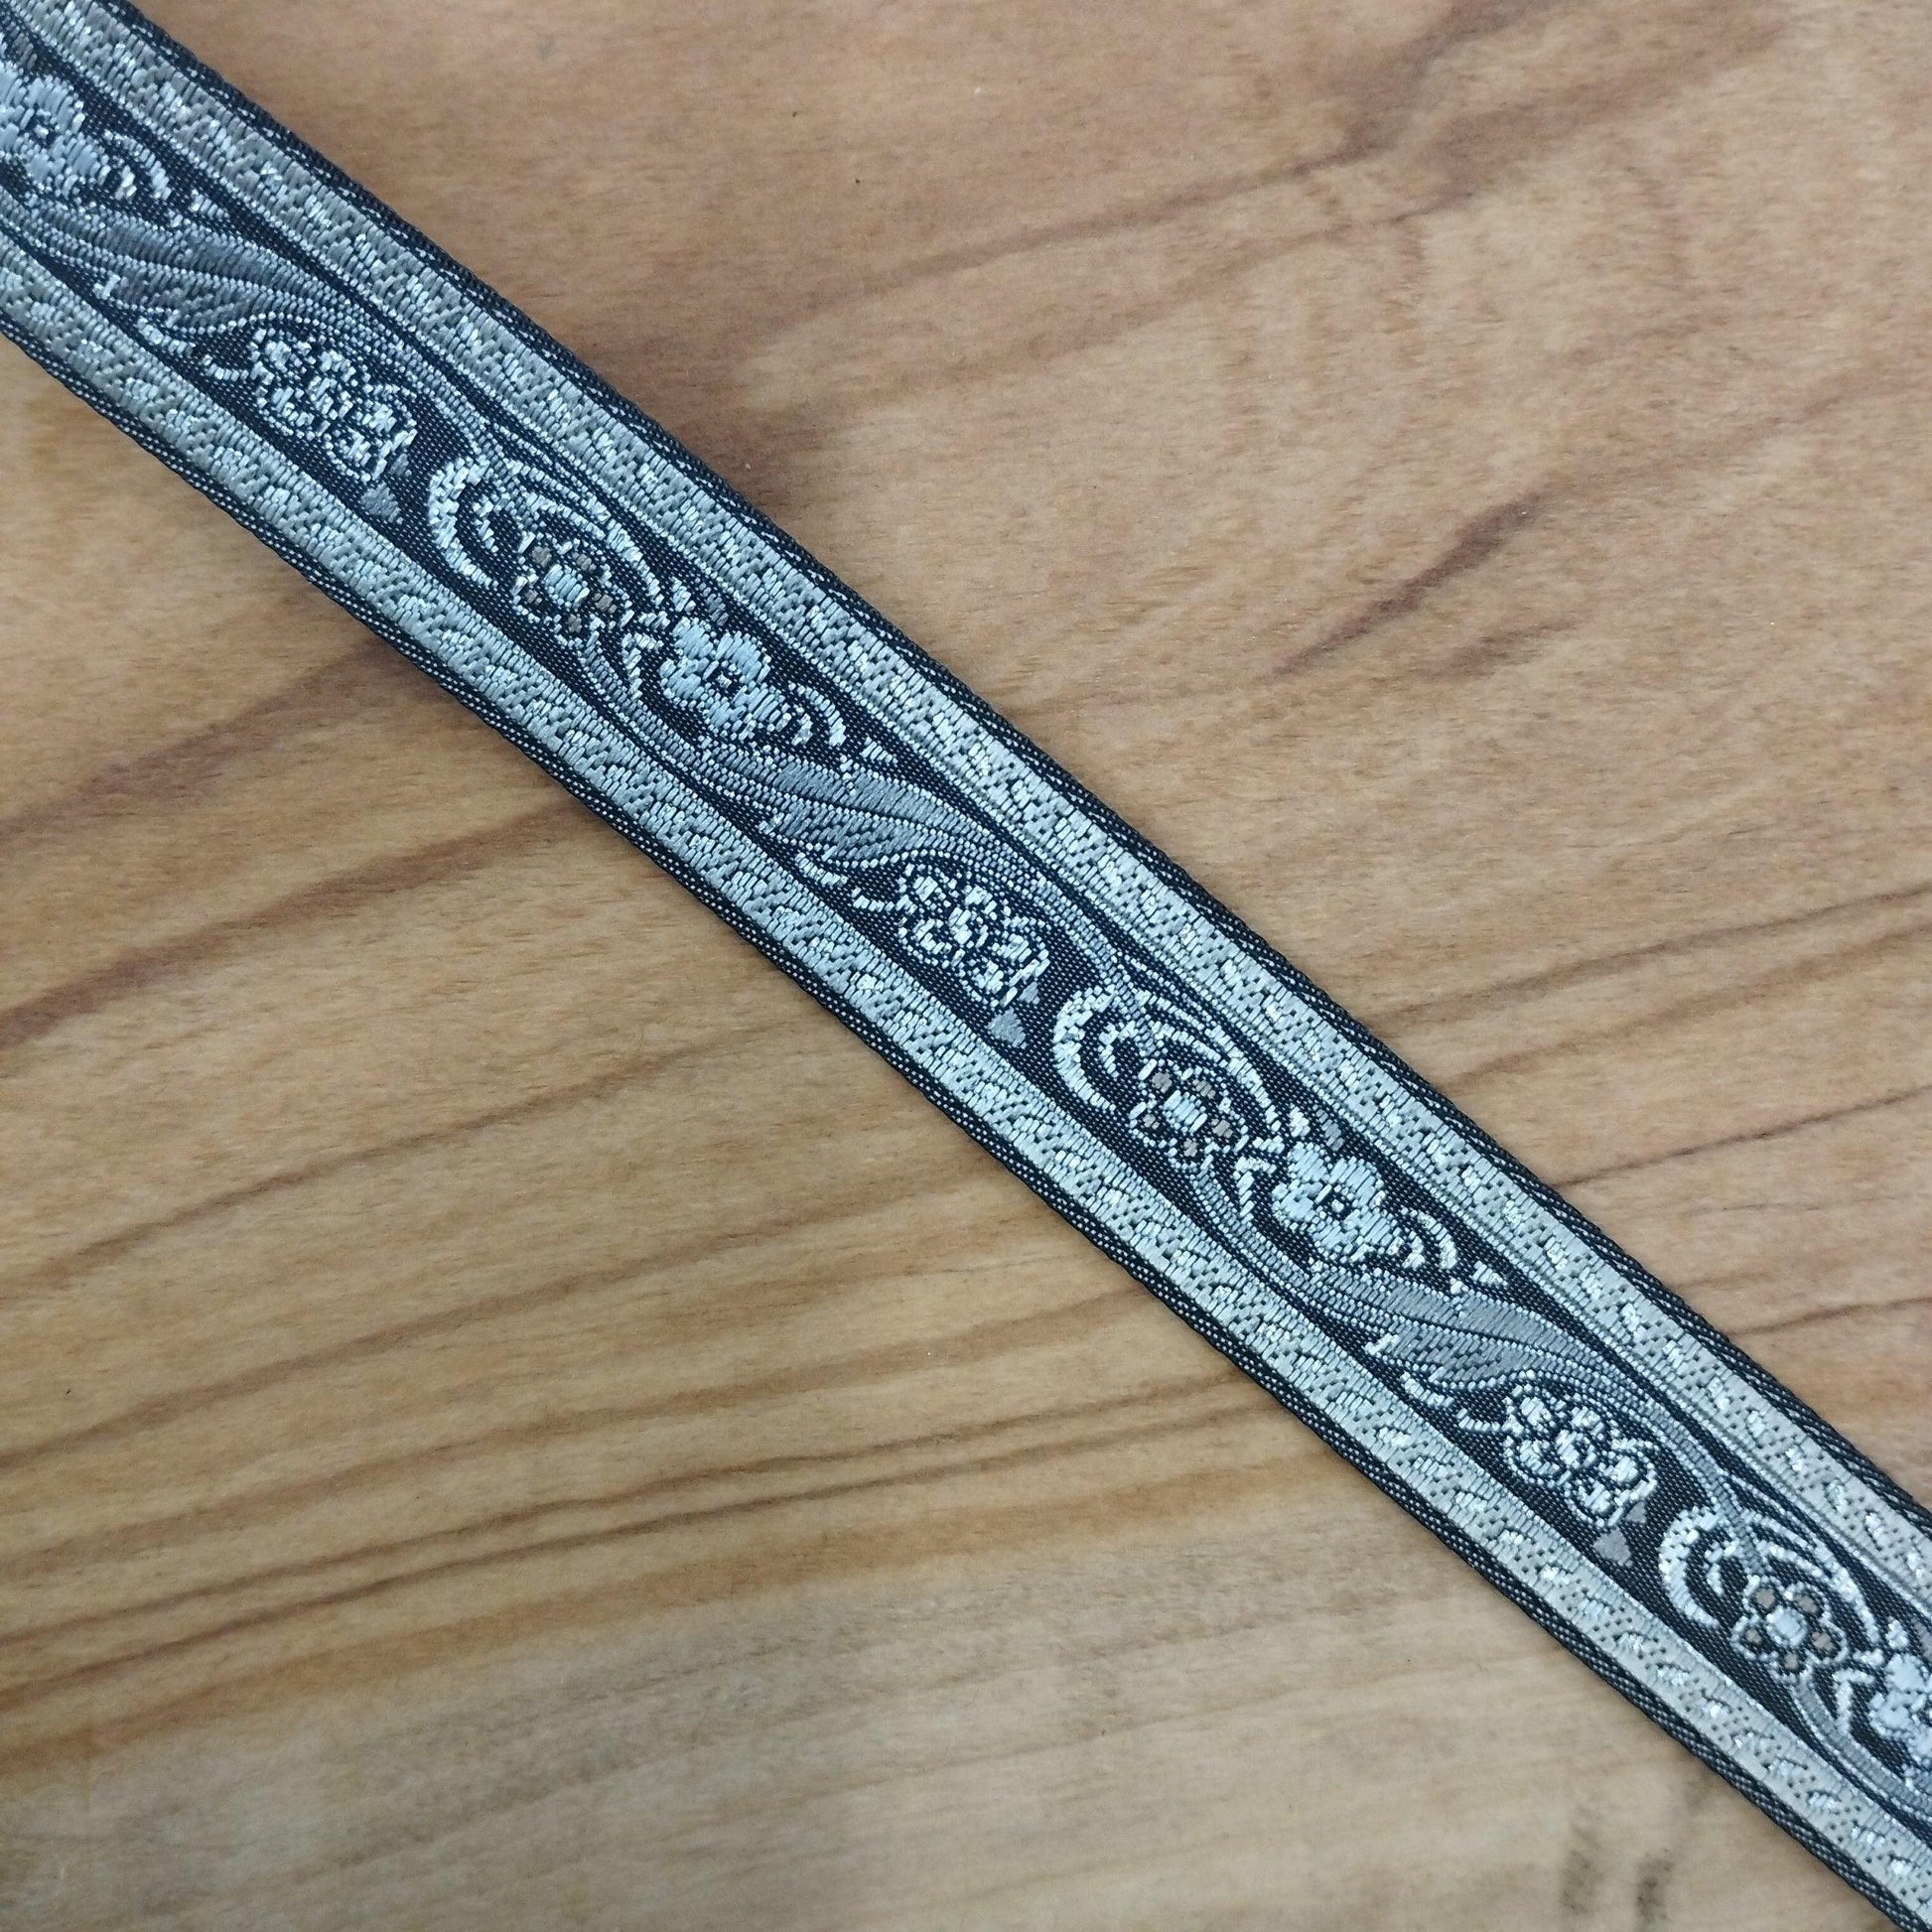 Gallone base argento/grigio/antracite con disegni damascati - Merceria Rispoli